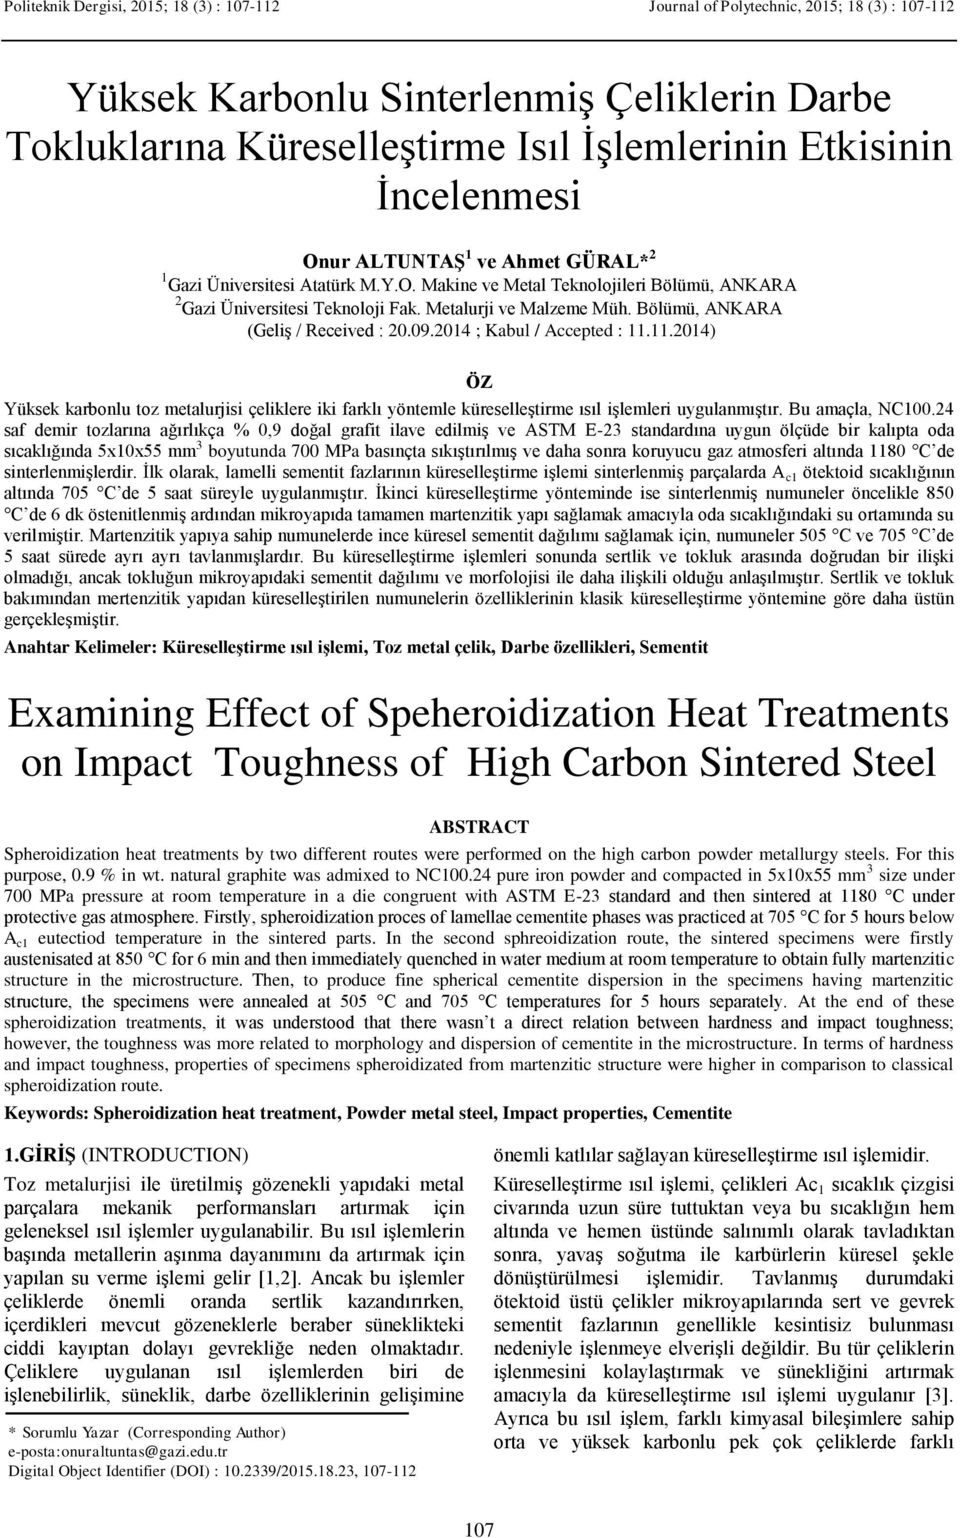 Bölümü, ANKARA (Geliş / Received : 20.09.2014 ; Kabul / Accepted : 11.11.2014 ÖZ Yüksek karbonlu toz metalurjisi çeliklere iki farklı yöntemle küreselleştirme ısıl işlemleri uygulanmıştır.